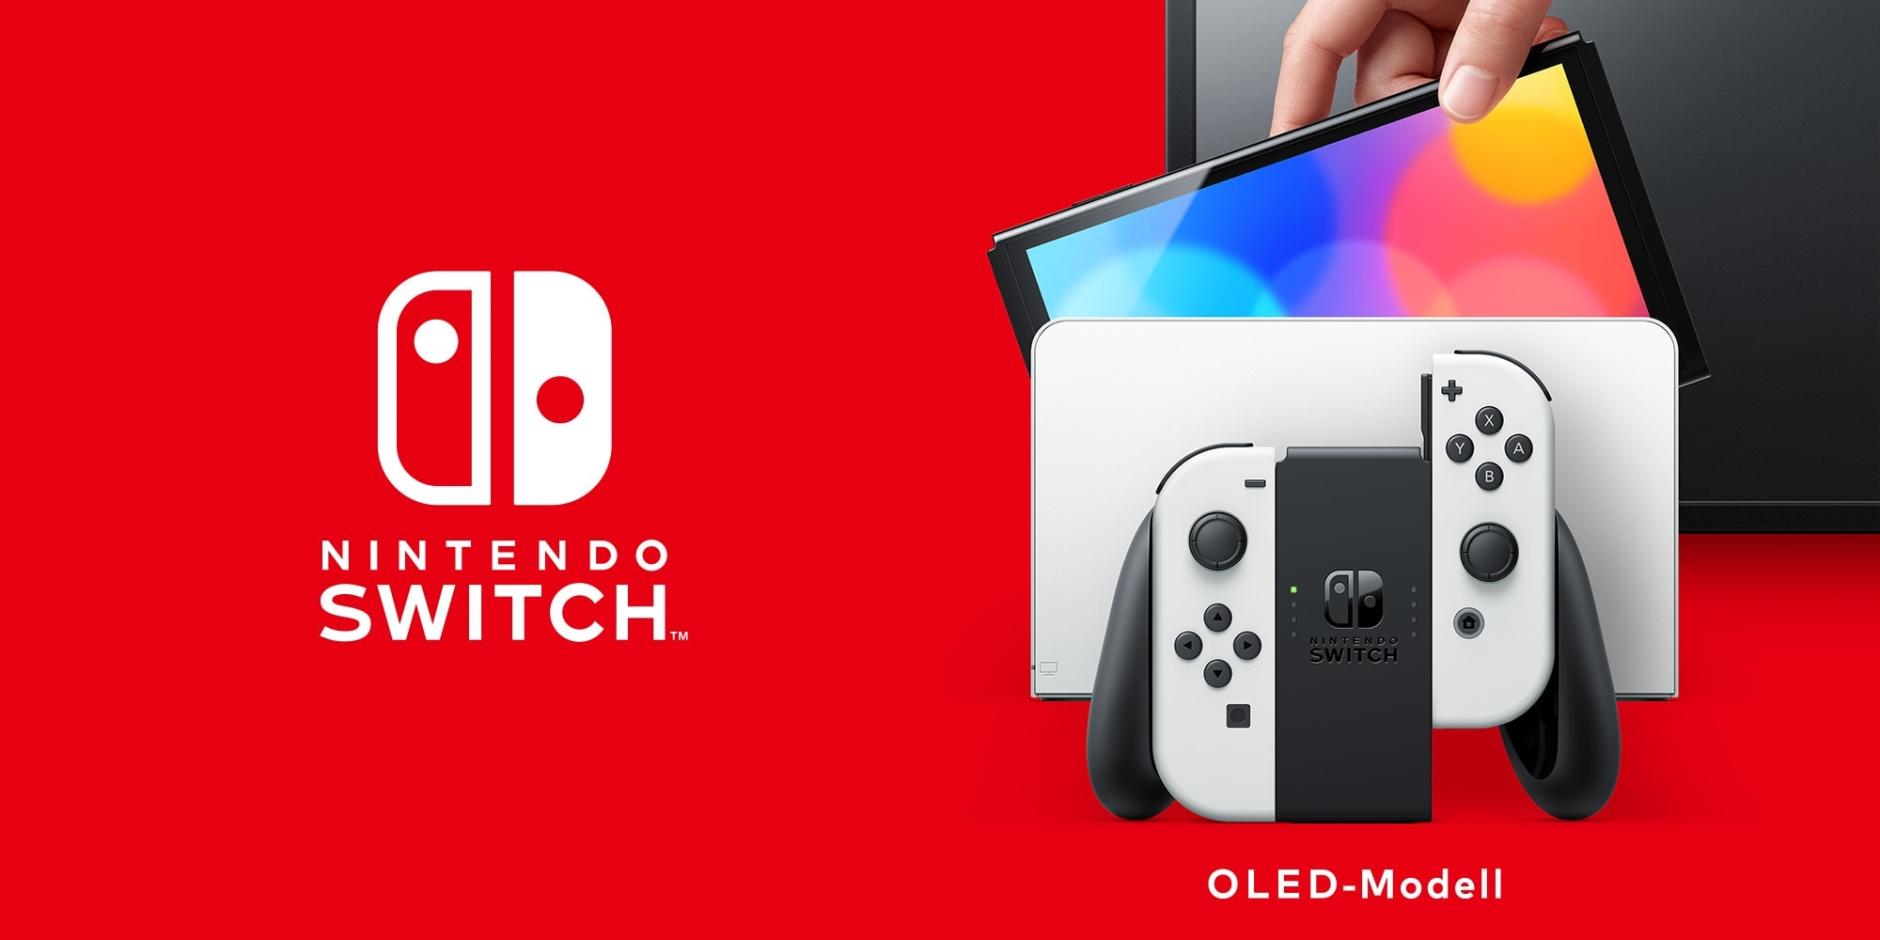 Nintendo Switch OLED-Modell vorgestellt: Lohnt der Kauf?